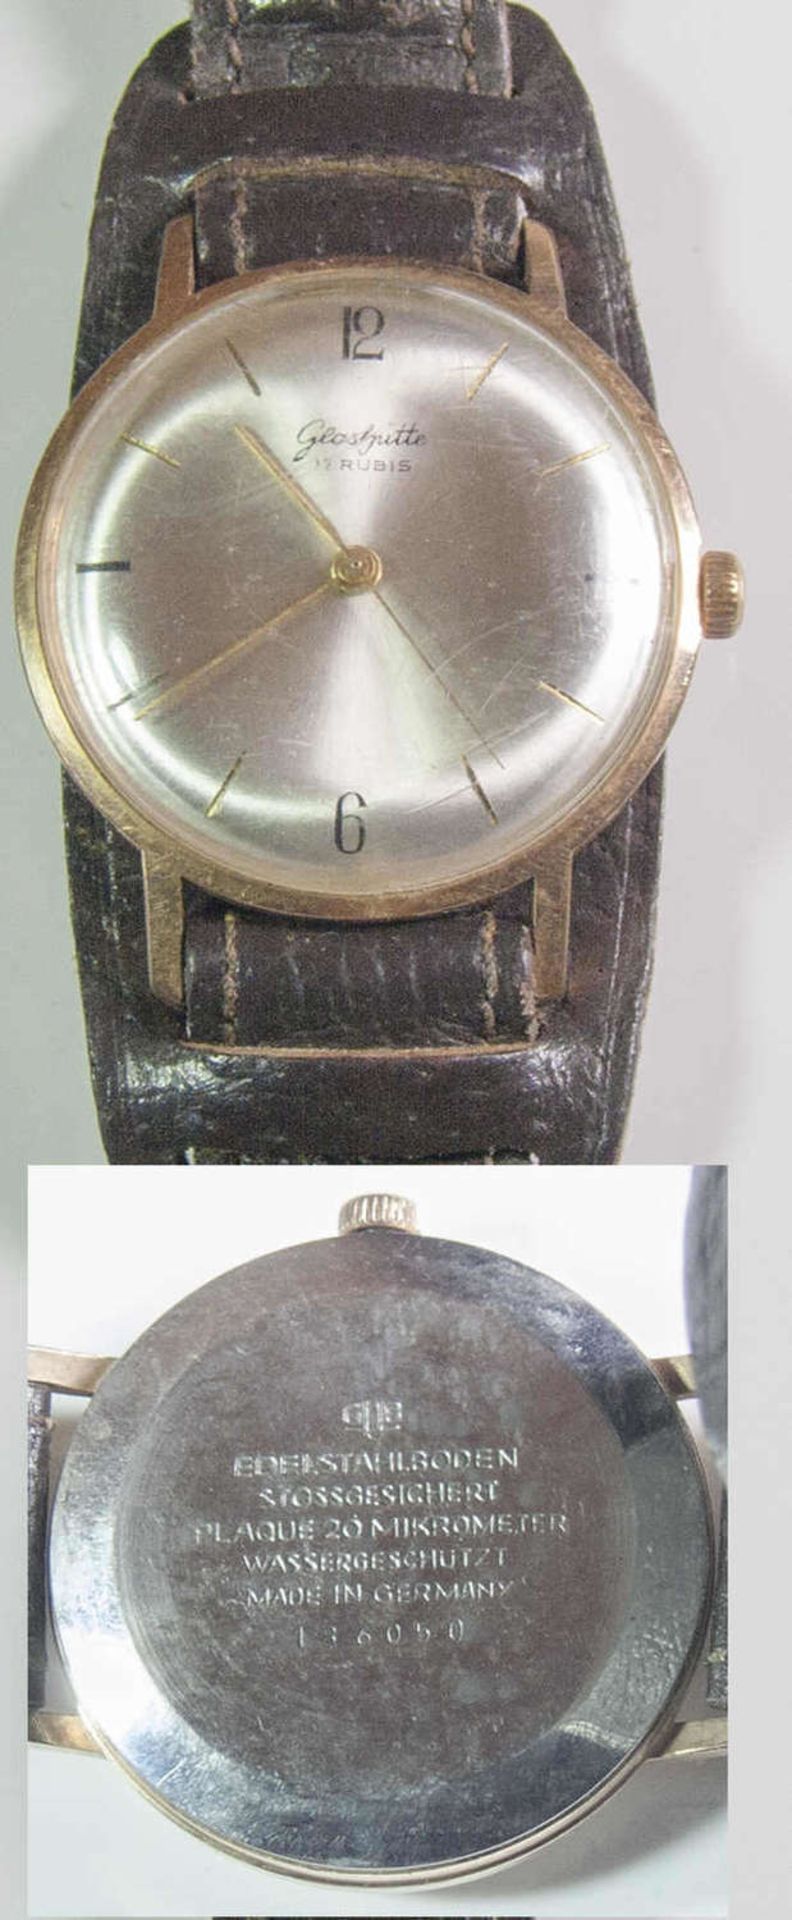 Glashütte - Herren - Armbanduhr. 17 Rubis. Vergoldetet. 20 Micrometer. Edelstahlboden. Die Uhr